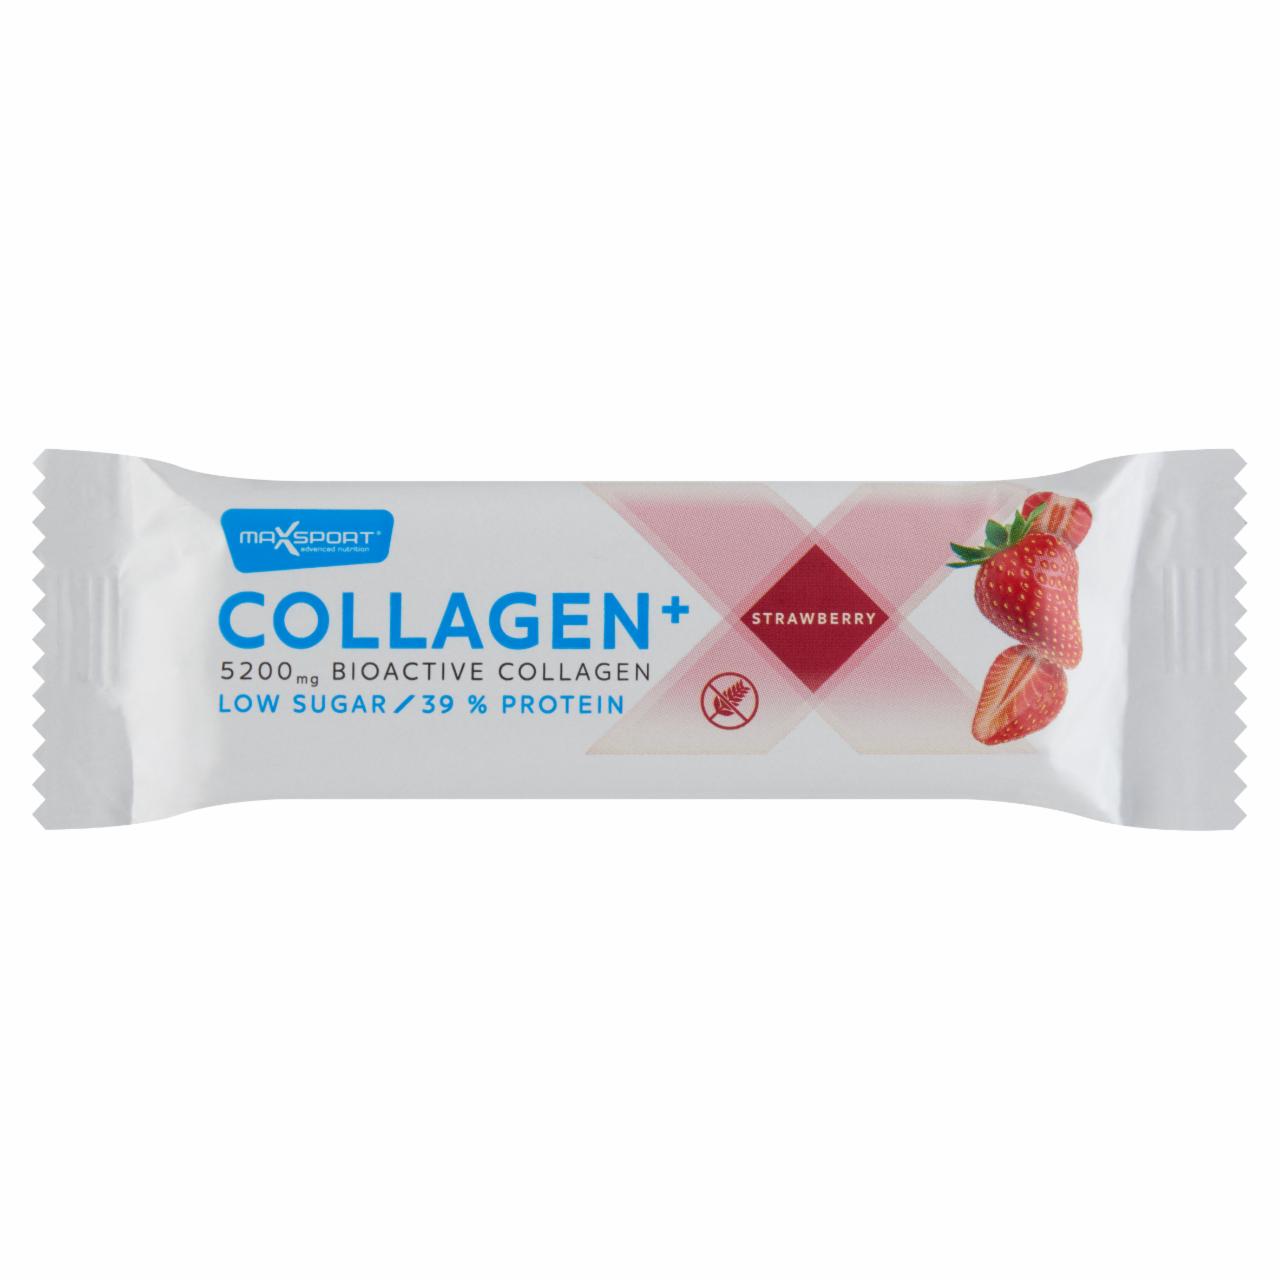 Képek - MaxSport Collagen+ protein szelet eperrel és kollagénnel, tejcsokoládé bevonatban 40 g